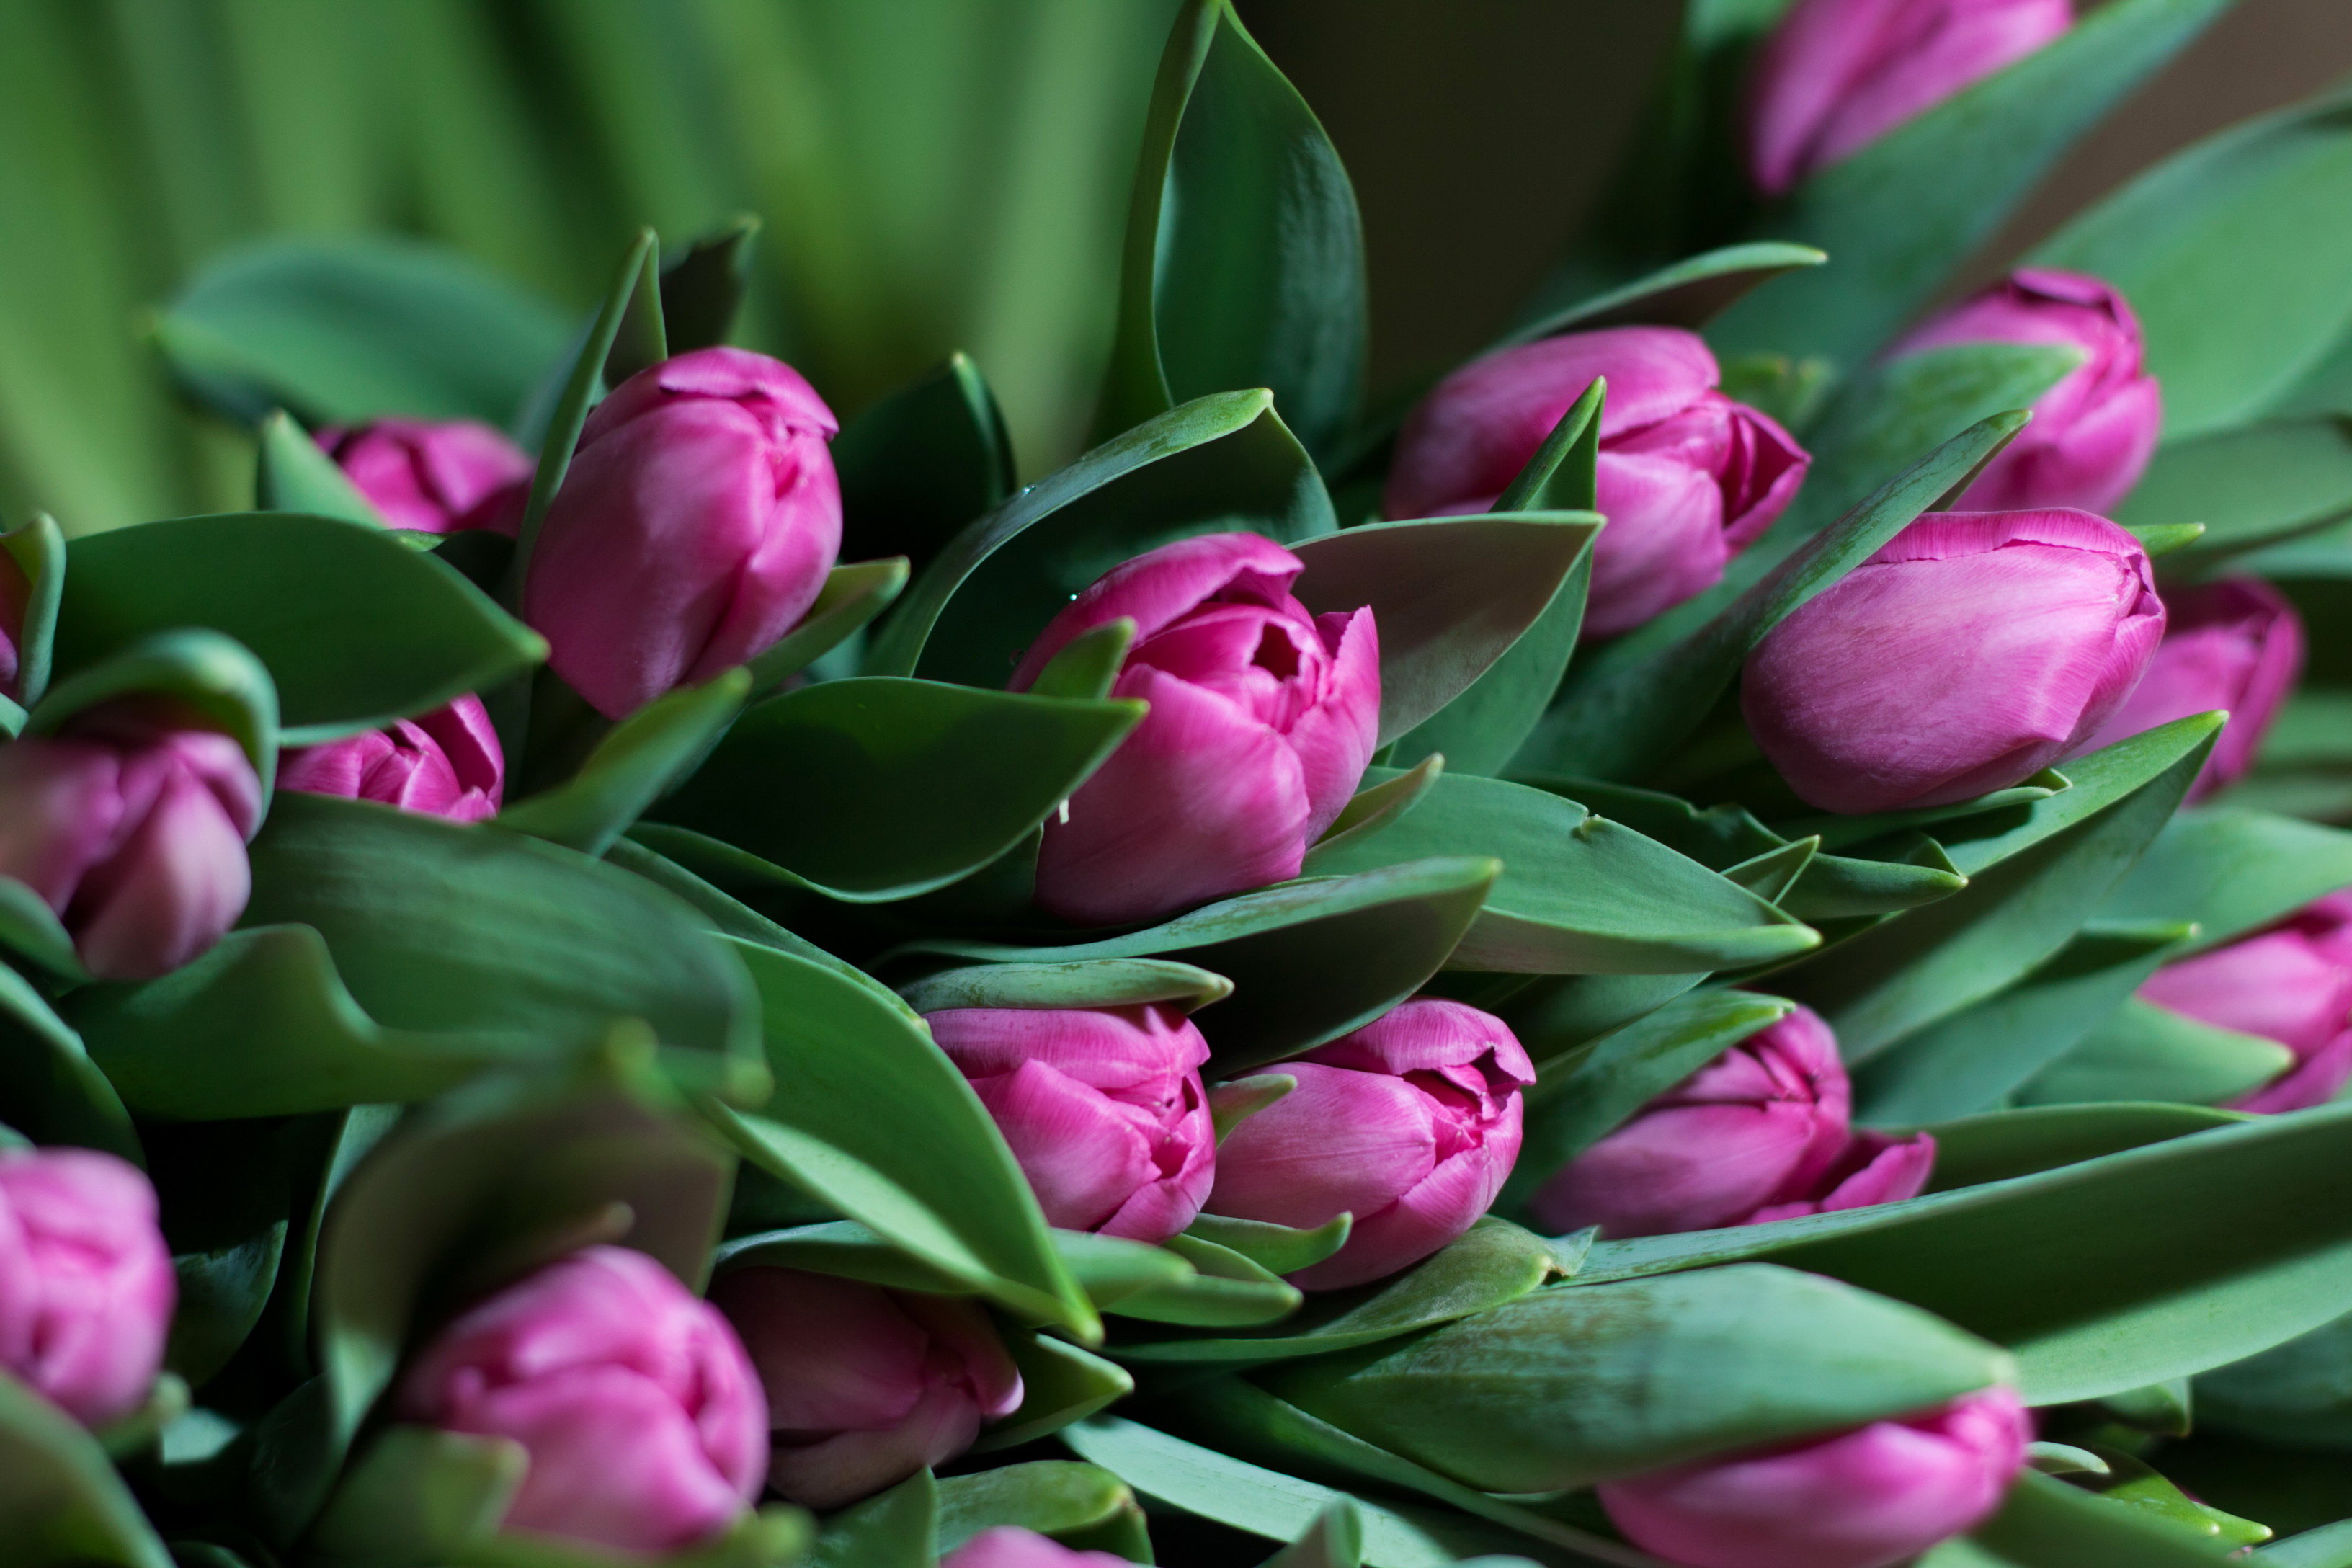 Обои на телефон красивые тюльпаны. Мелкоцветные тюльпаны. Тюльпан Vesna. Тюльпан Саманта. Тюльпаны 4к.